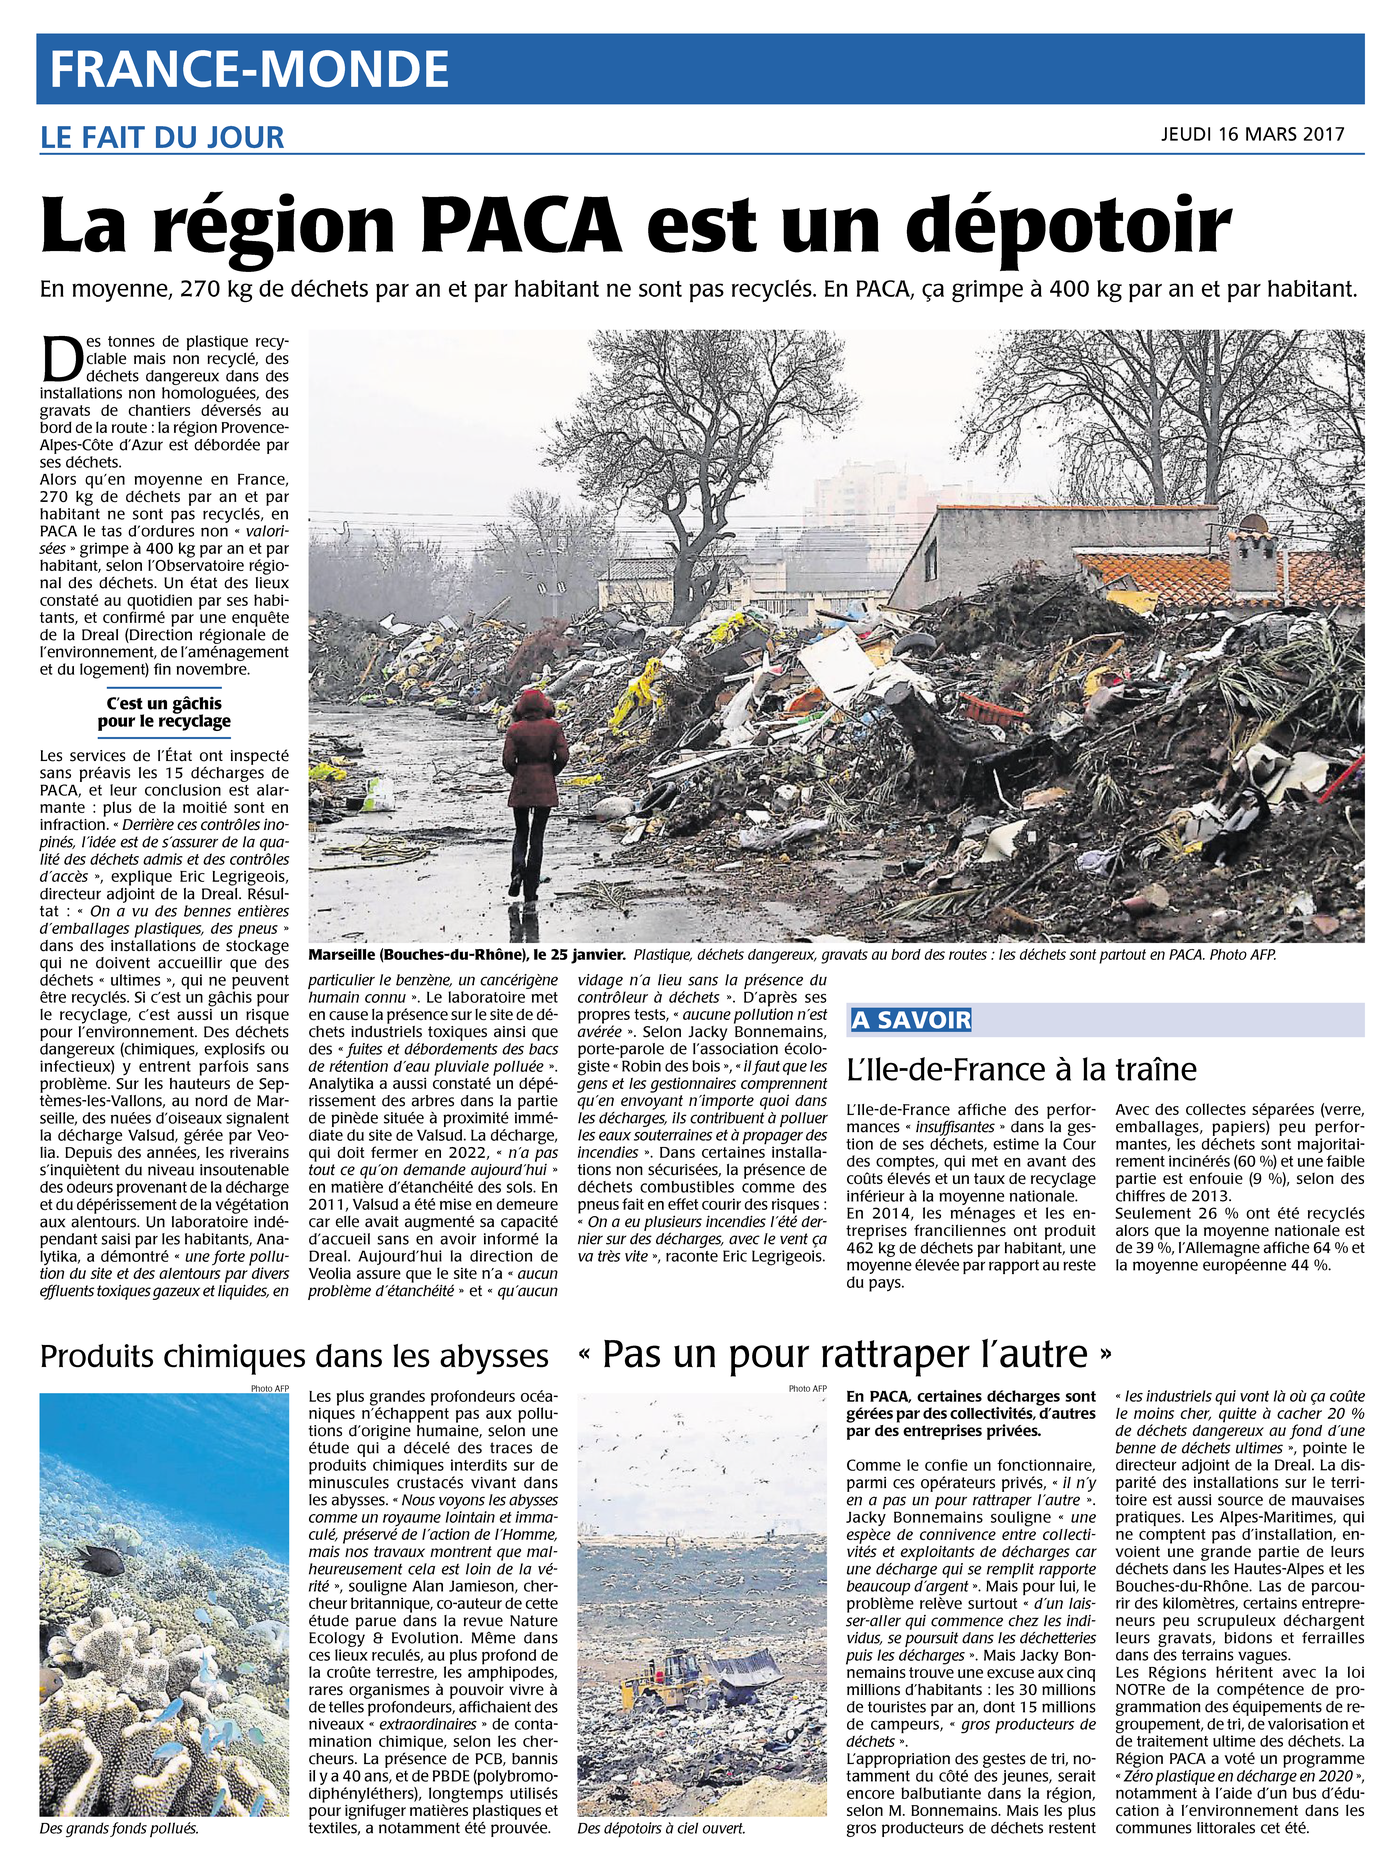 16.03.2017 > AFP (Marseille) : "La région PACA malade de ses déchets"